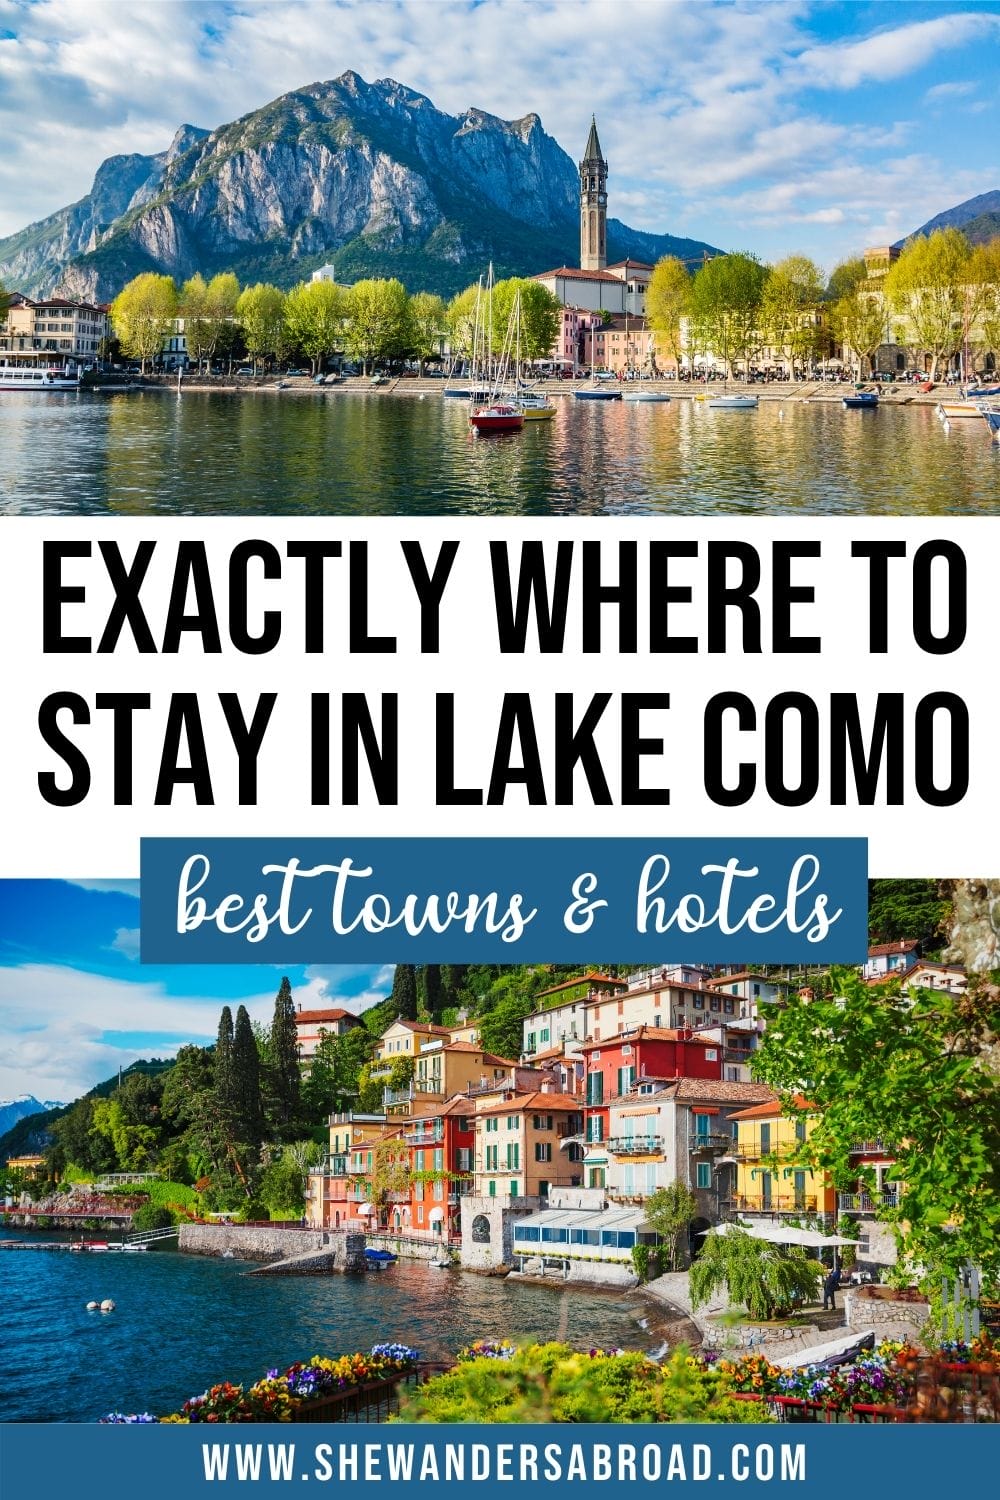 najlepsze miejsca na pobyt w jeziorze Como: Najlepsze miasta Hotele